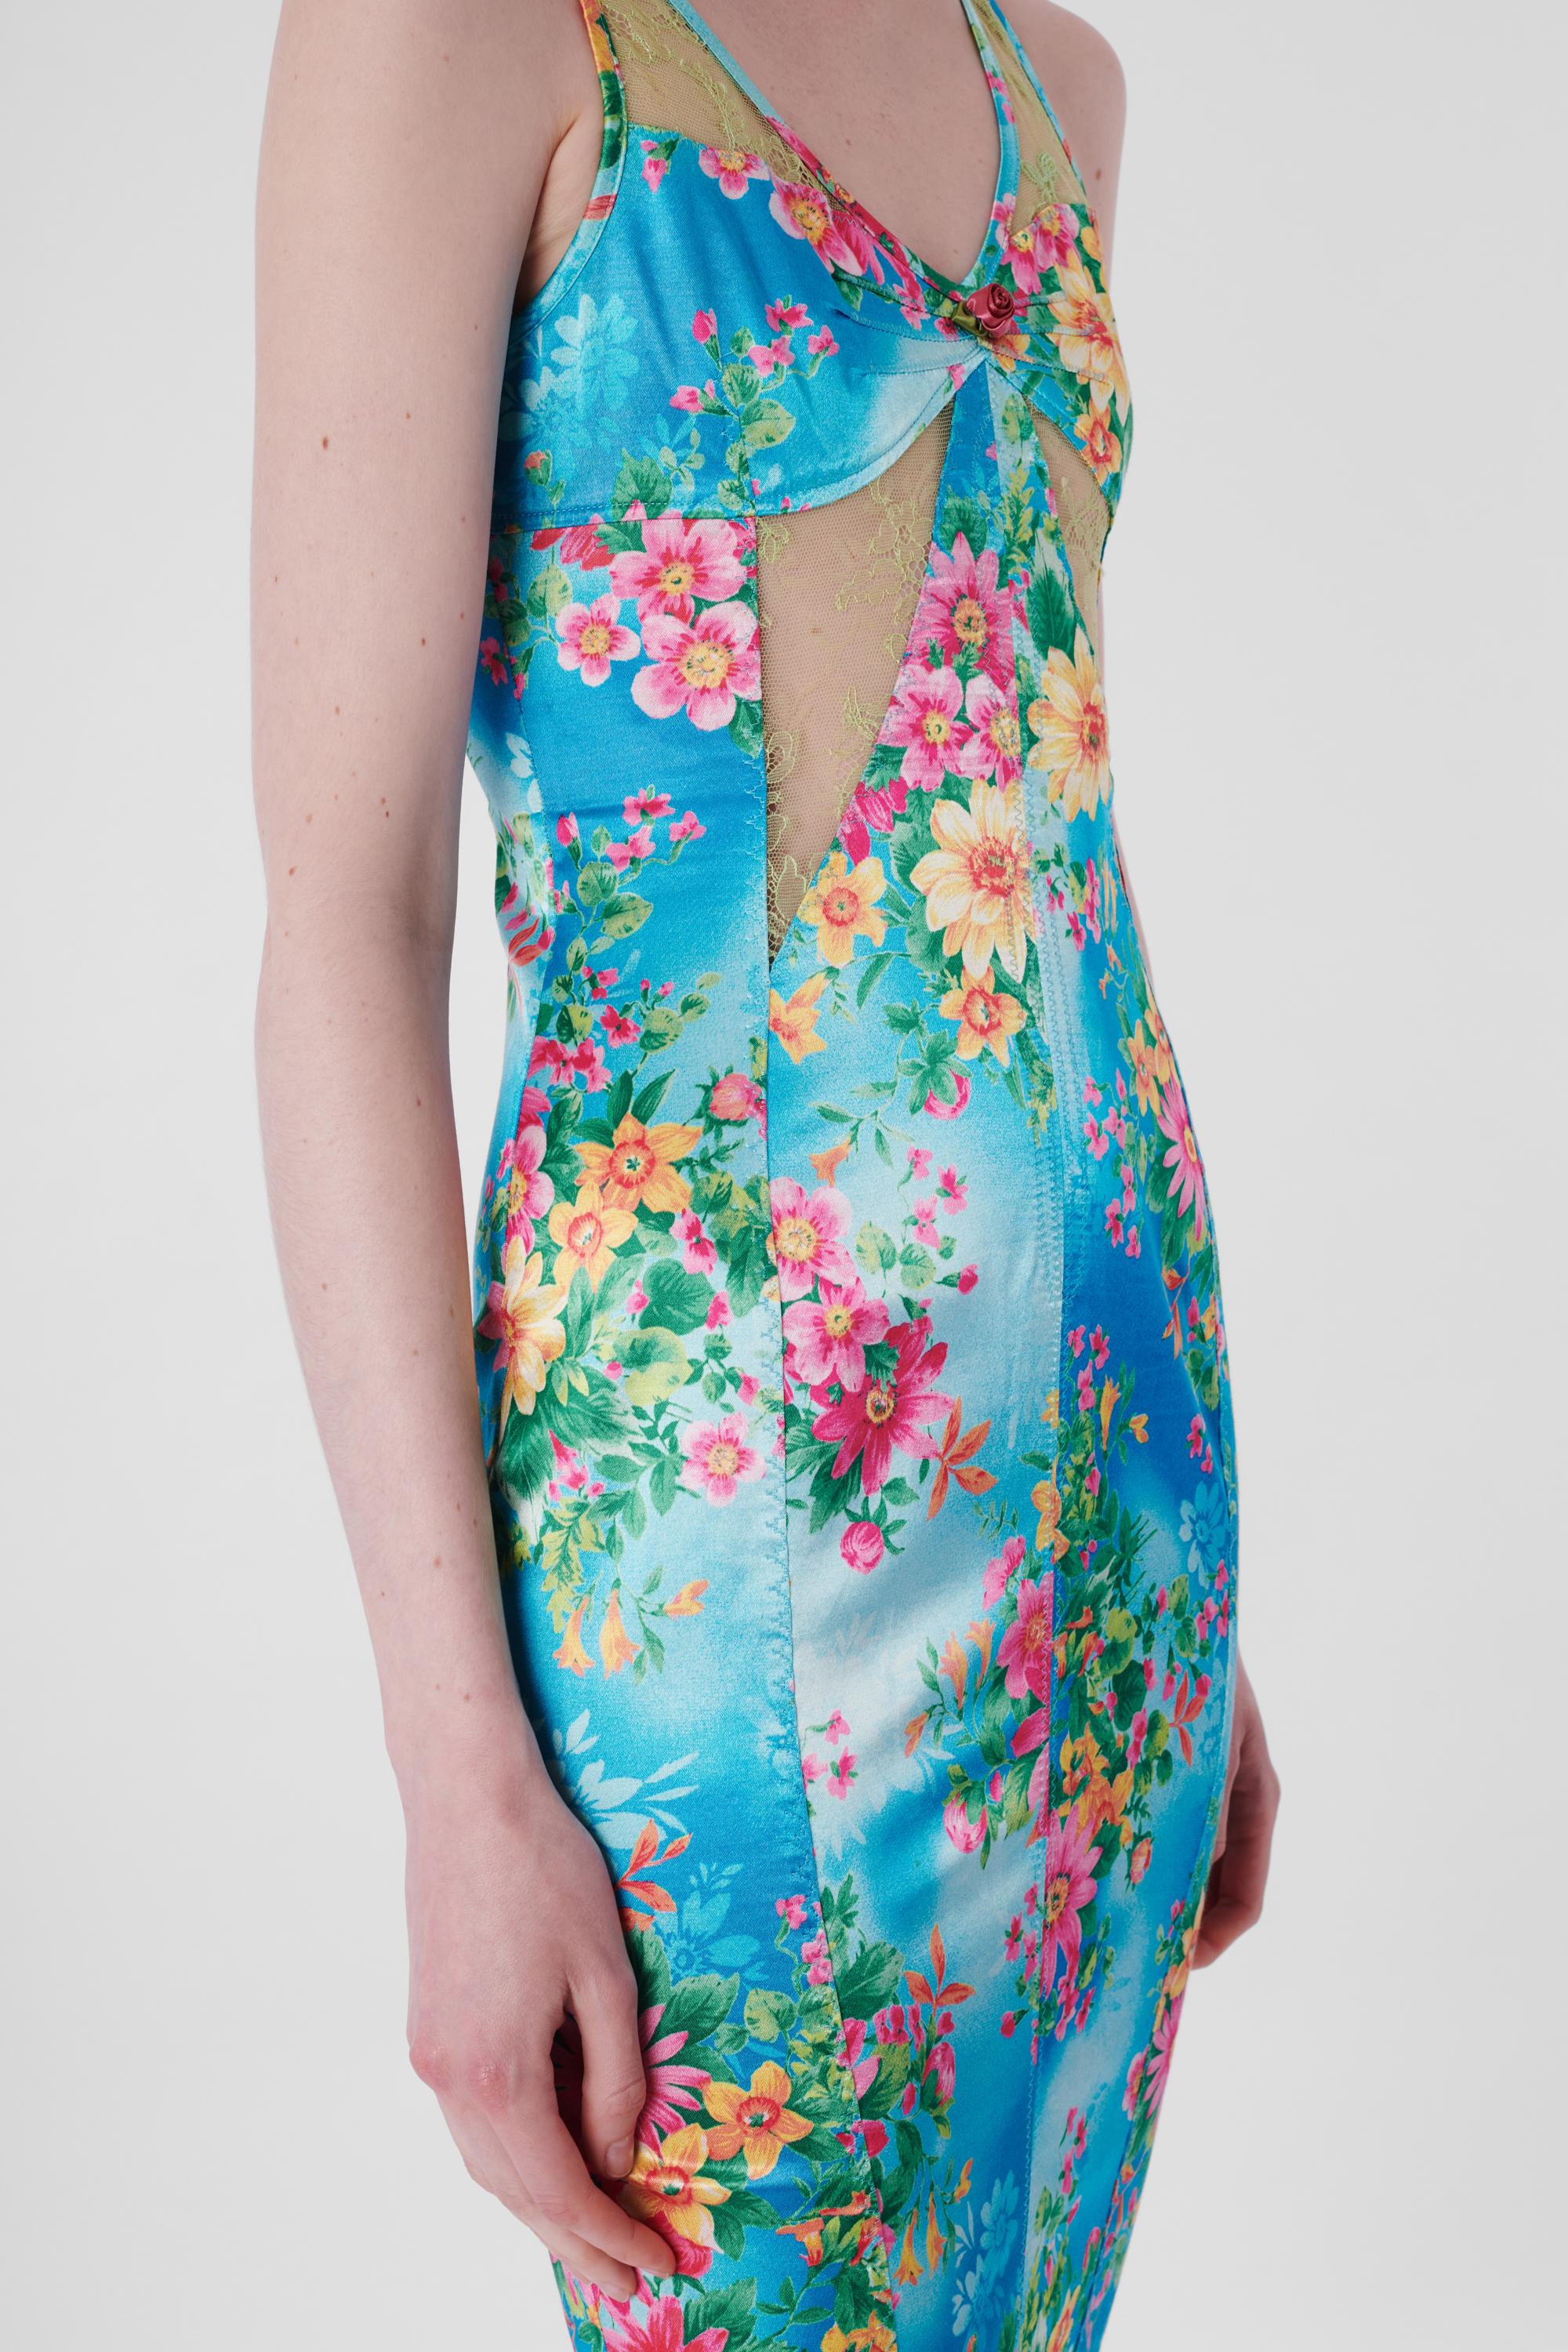 Women's or Men's Vintage Floral Lace Bodycon Dress For Sale